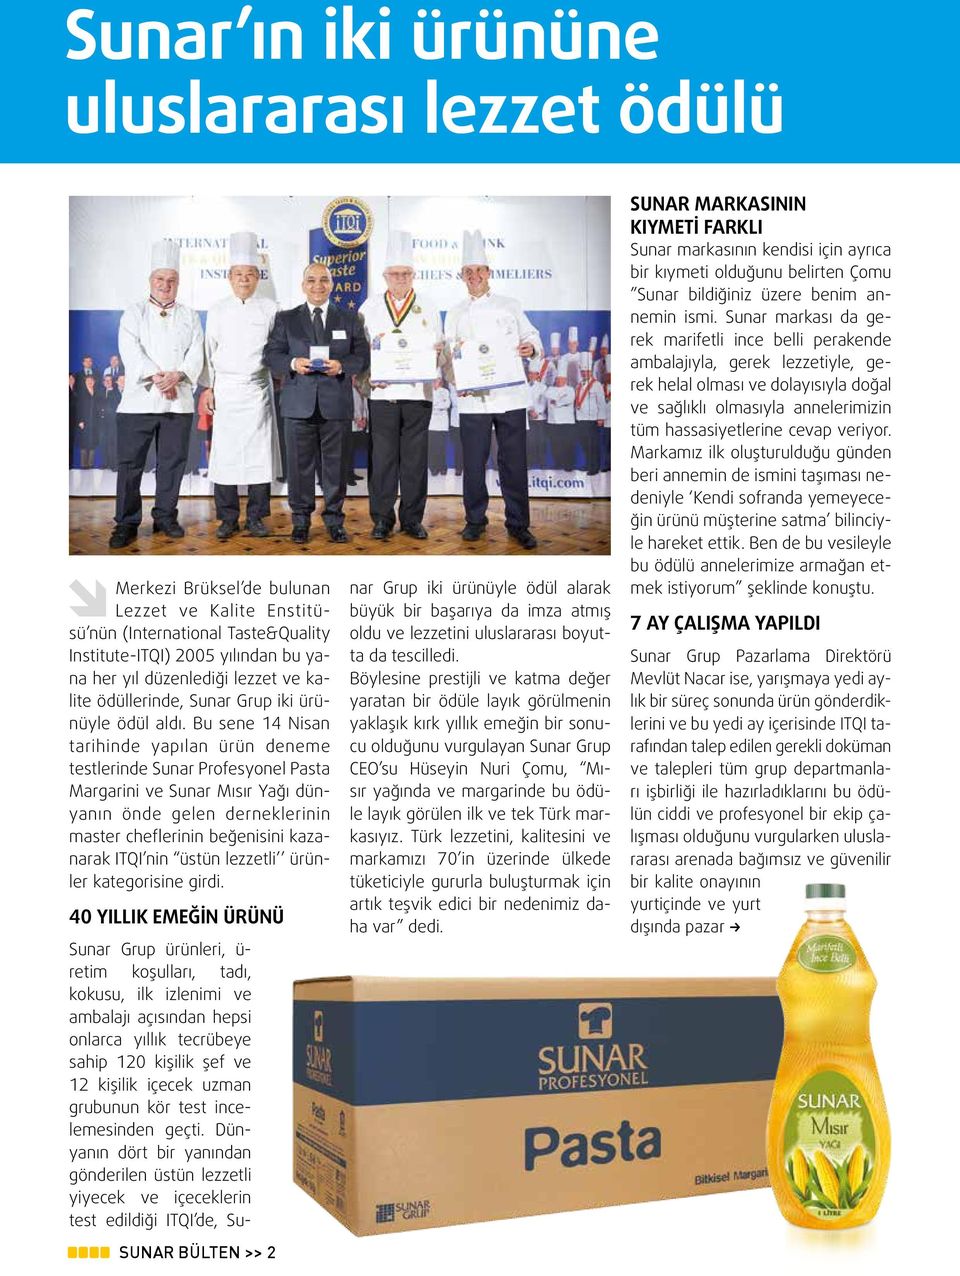 Bu sene 14 Nisan tarihinde yapılan ürün deneme testlerinde Sunar Profesyonel Pasta Margarini ve Sunar Mısır Yağı dünyanın önde gelen derneklerinin master cheflerinin beğenisini kazanarak ITQI nin